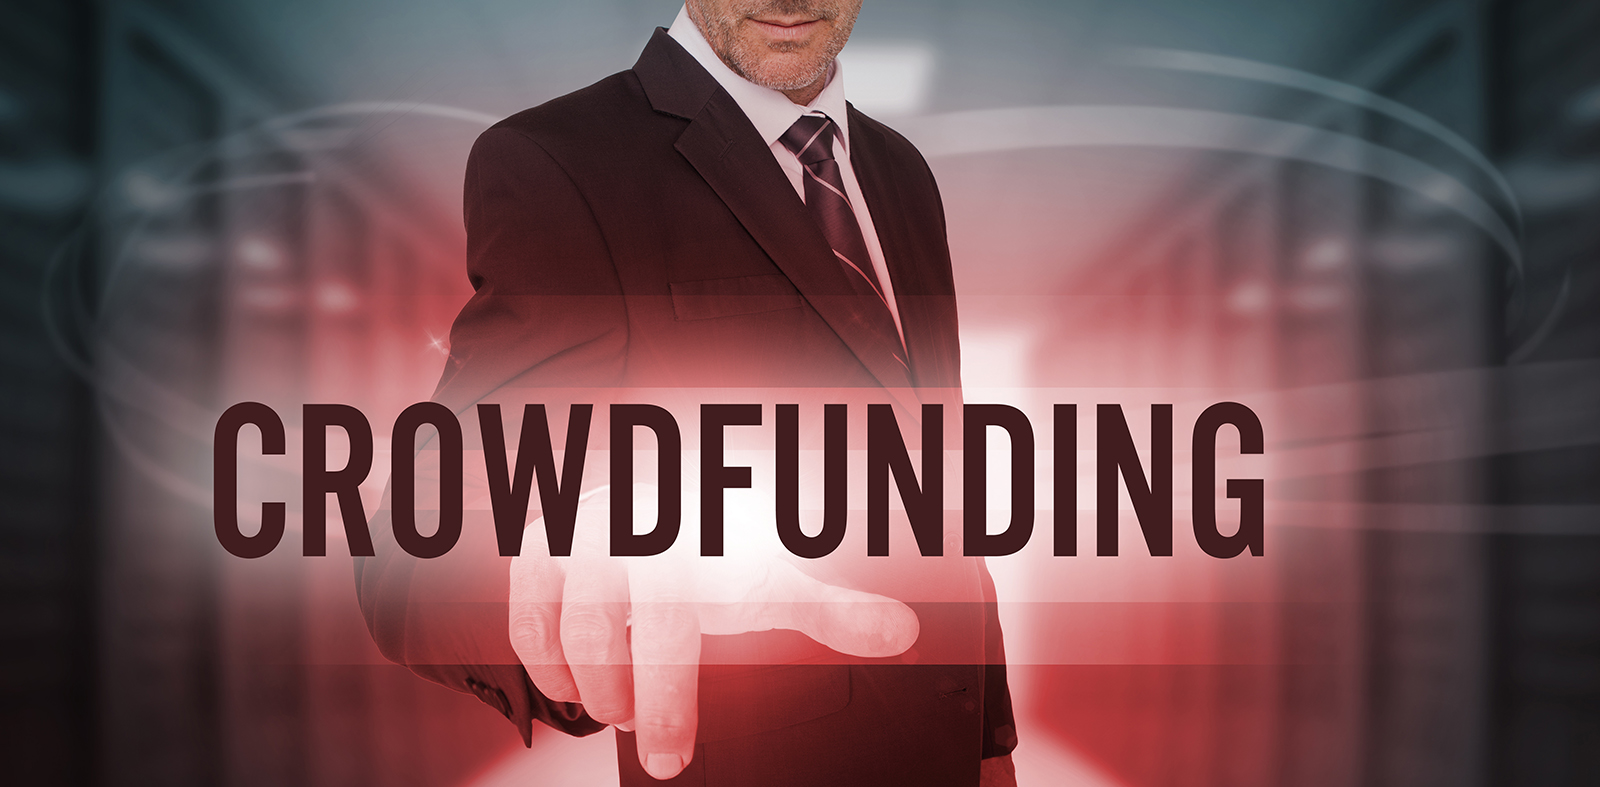 Allarme crowdfunding! Senza Authority, settore a rischio. L’appello di Investimento Digitale